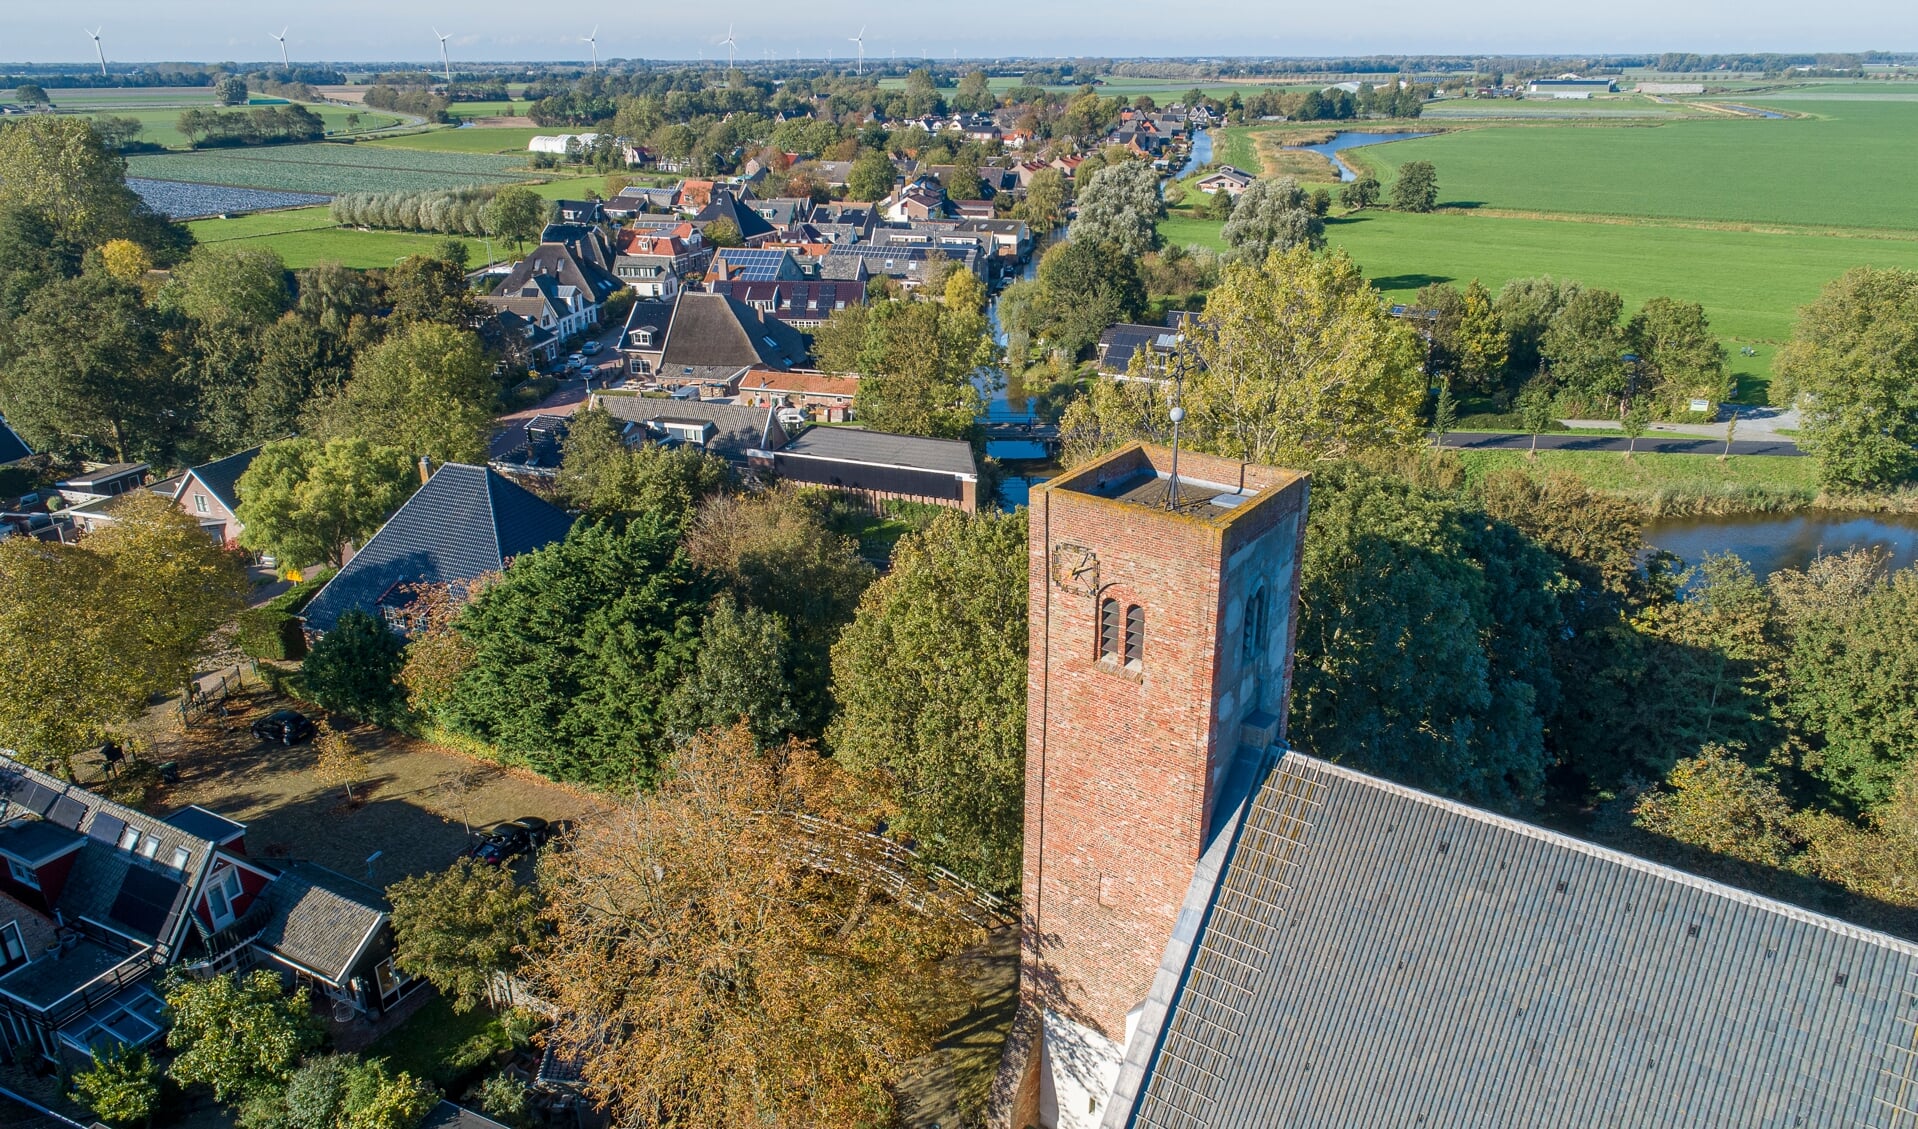 De Allemanskerk in Oudkarspel, een van de pareltjes uit het boek van Norbert Reijngoud.